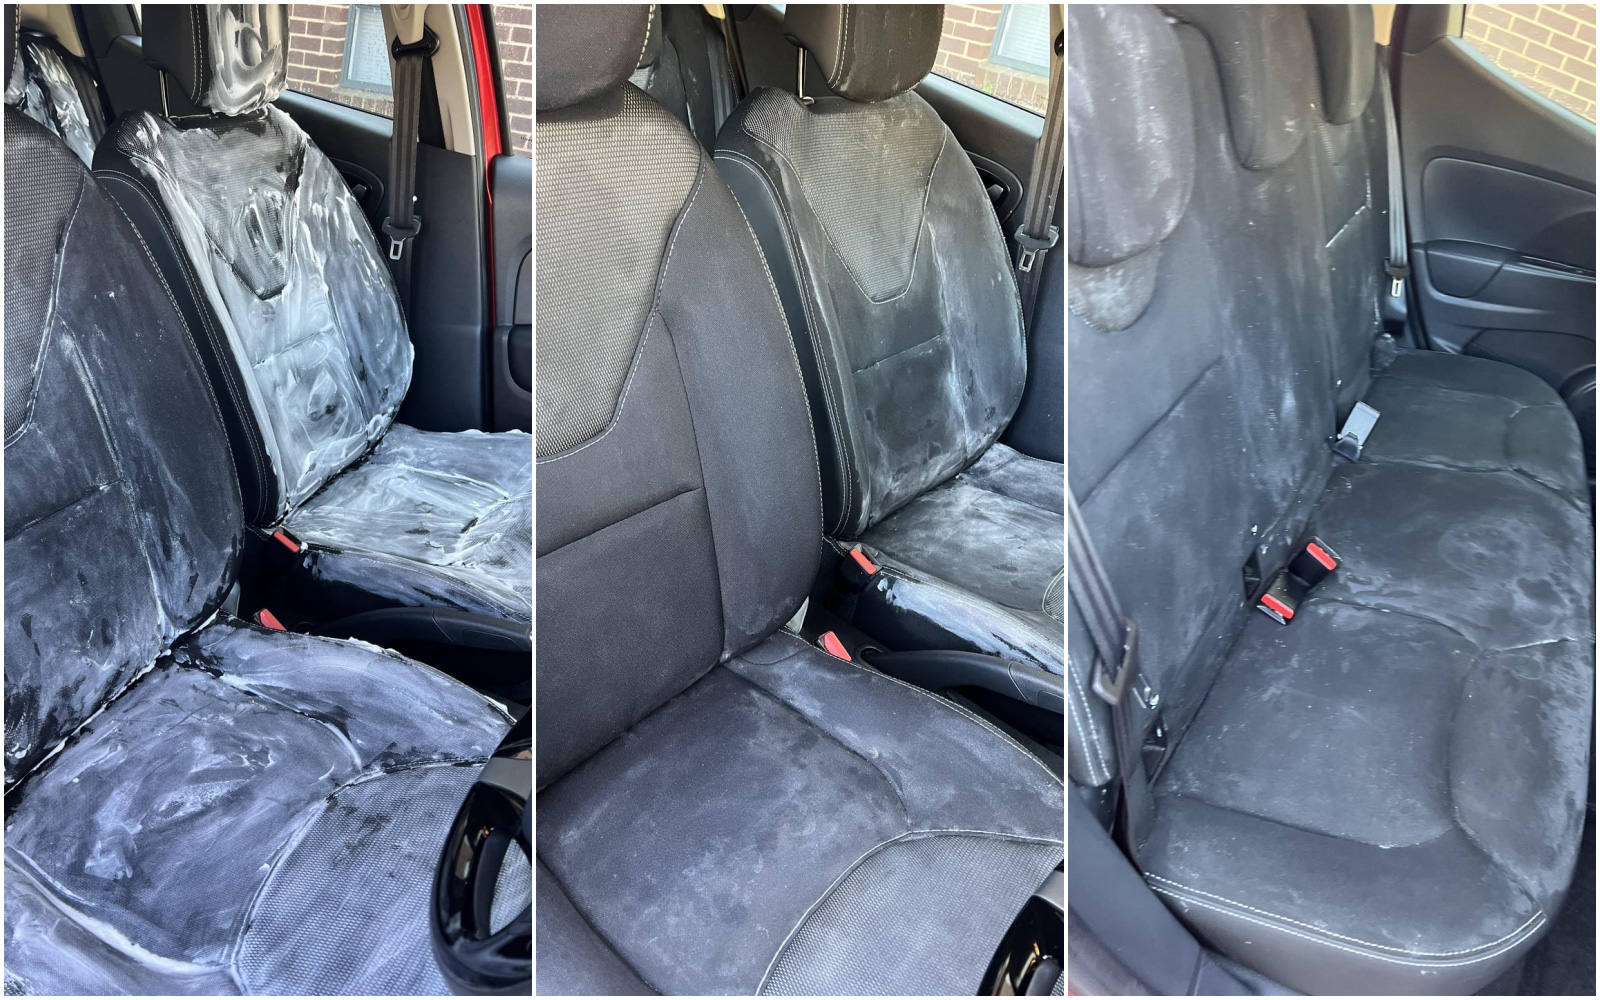 "Tàn phá" nội thất vì học mẹo làm sạch ghế ô tô trên mạng